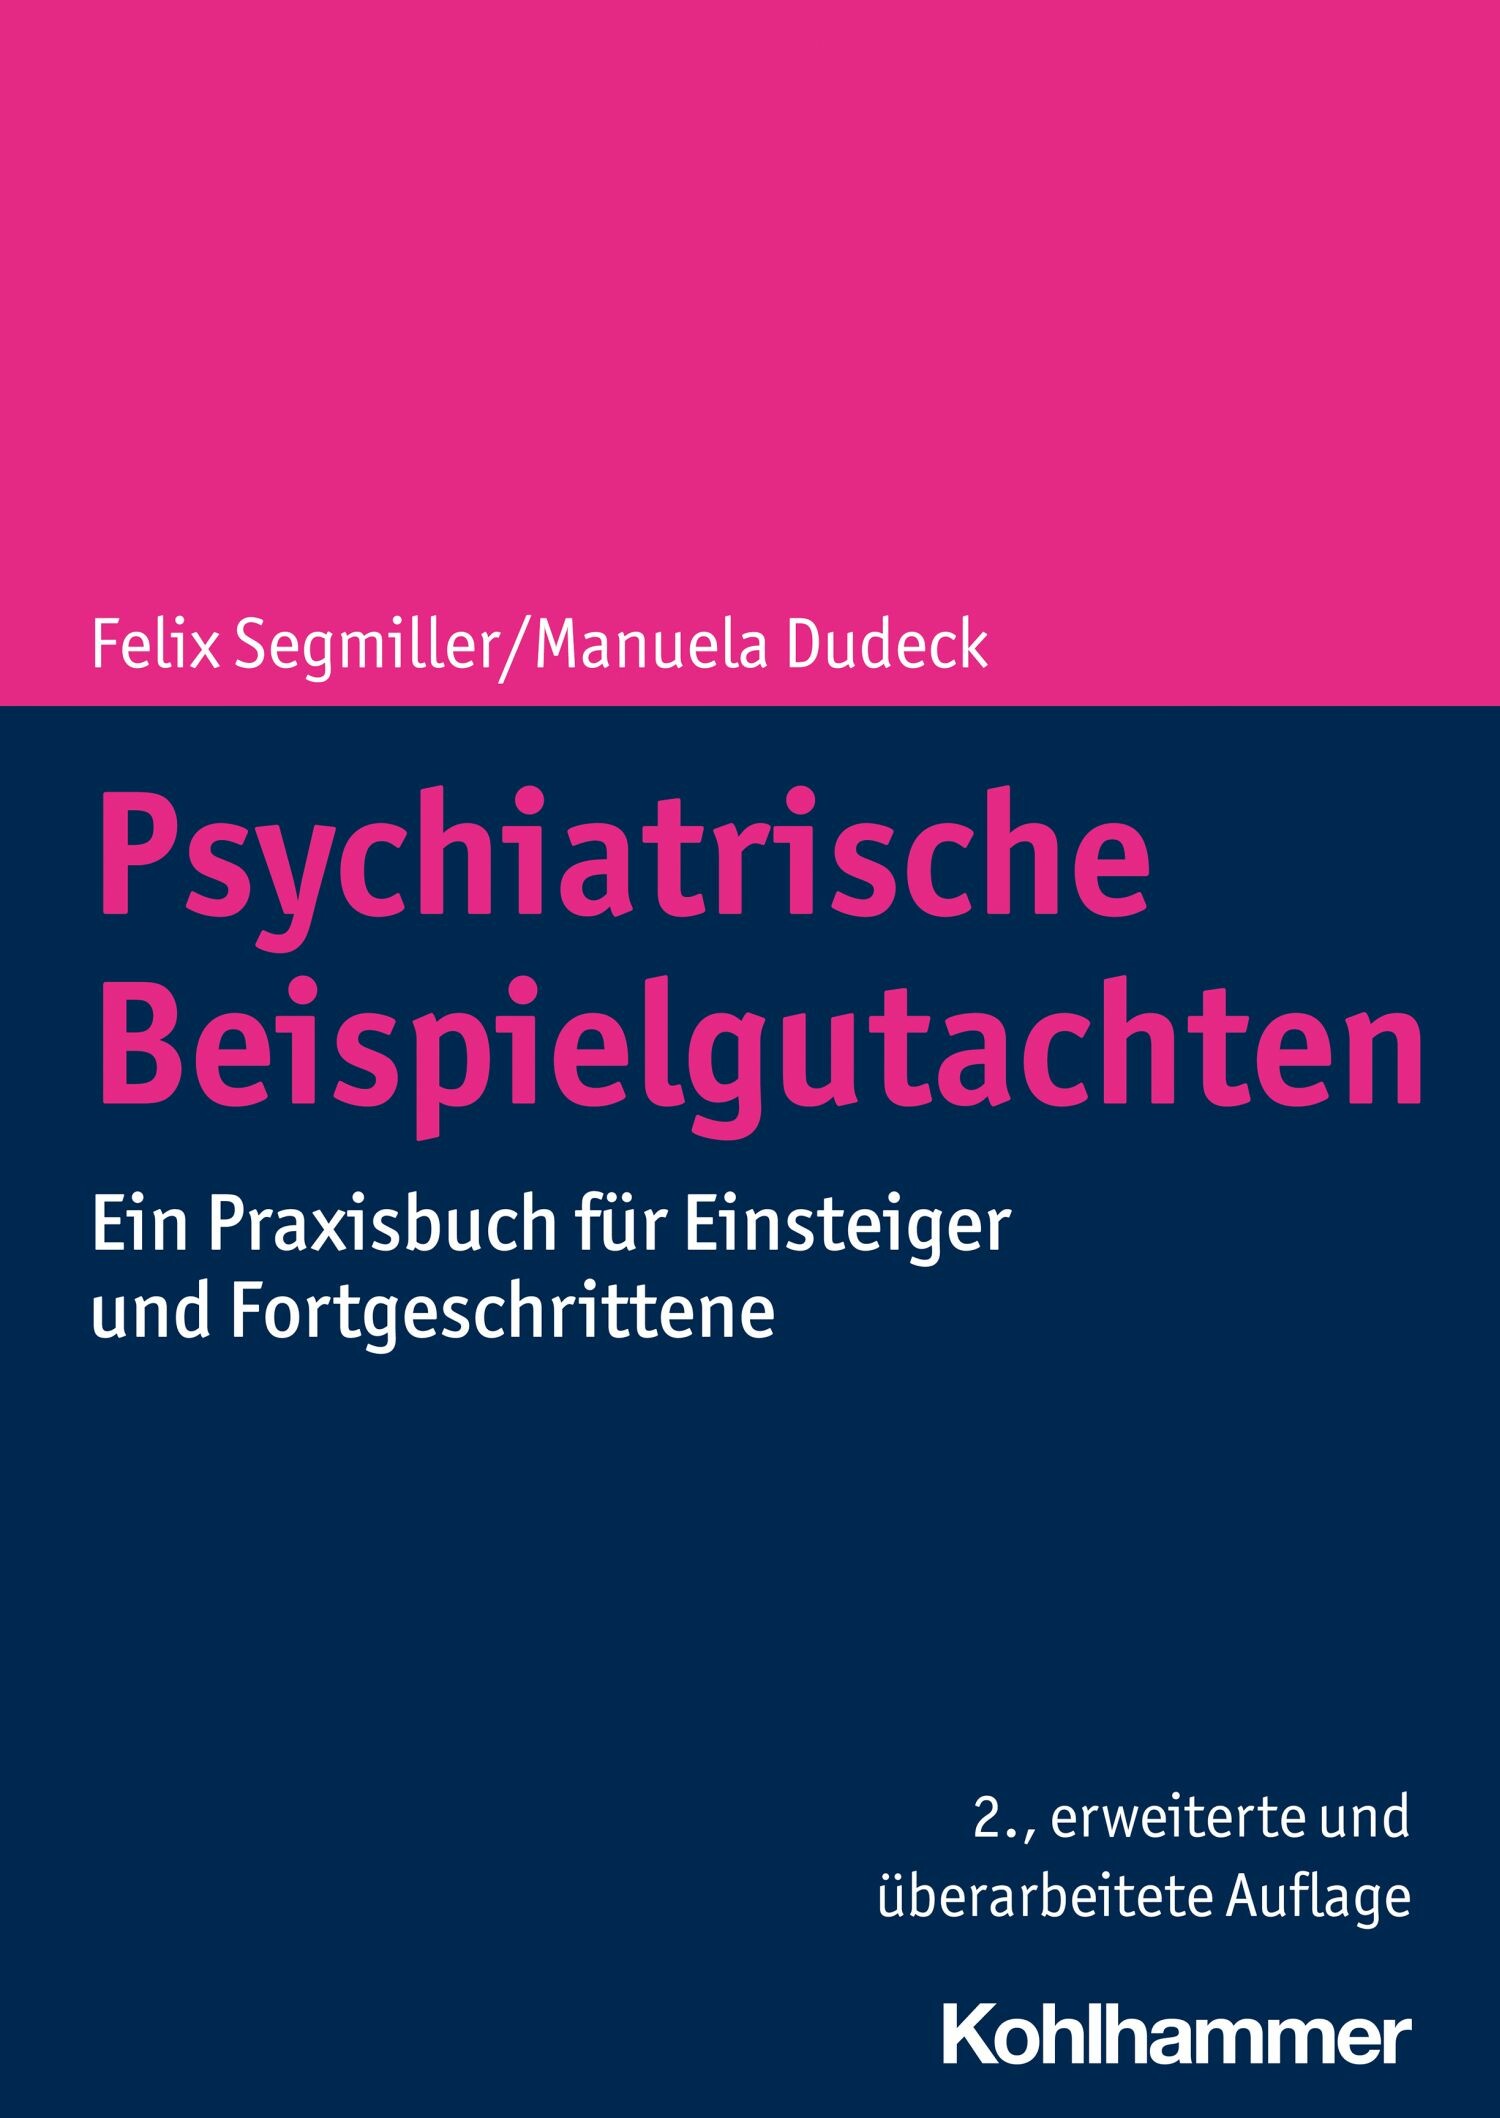 Cover Psychiatrische Beispielgutachten